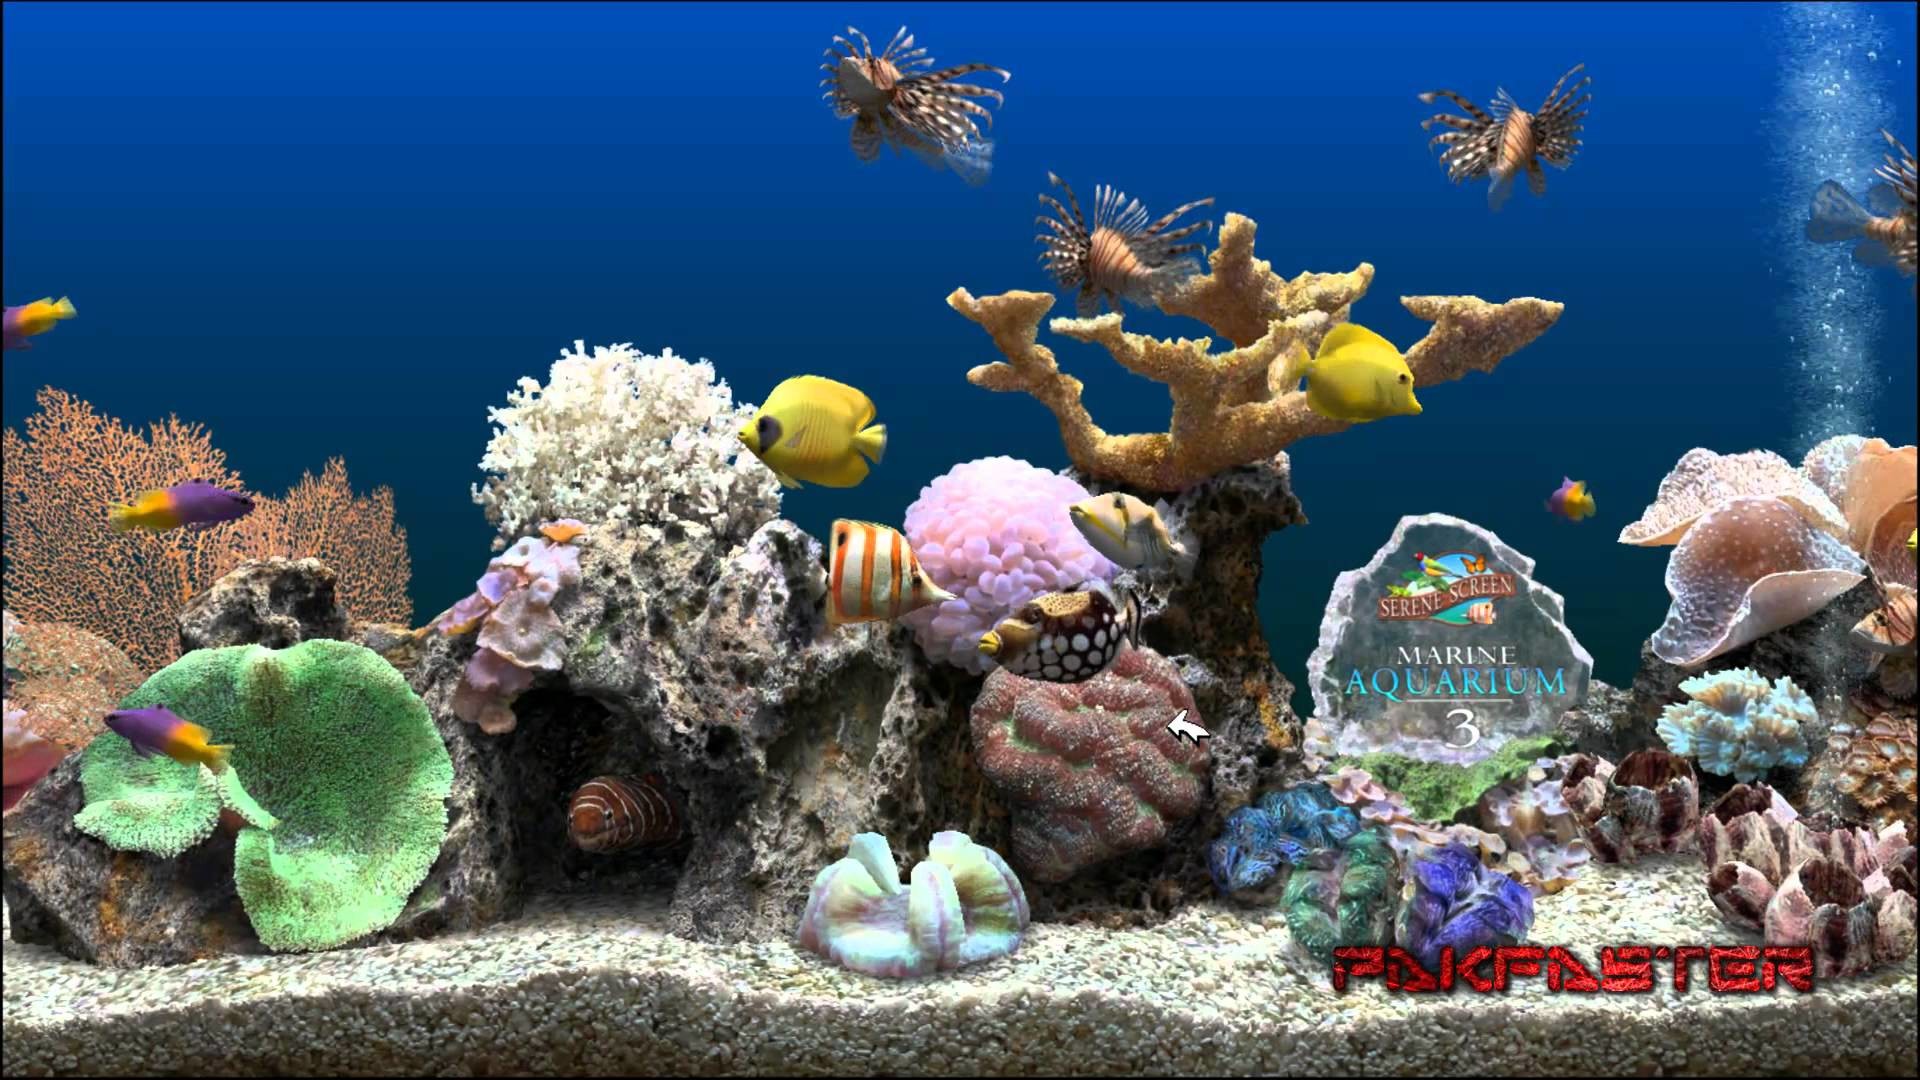 1920x1080 ... aquarium hd 1080p wallpaper - photo #25 ...